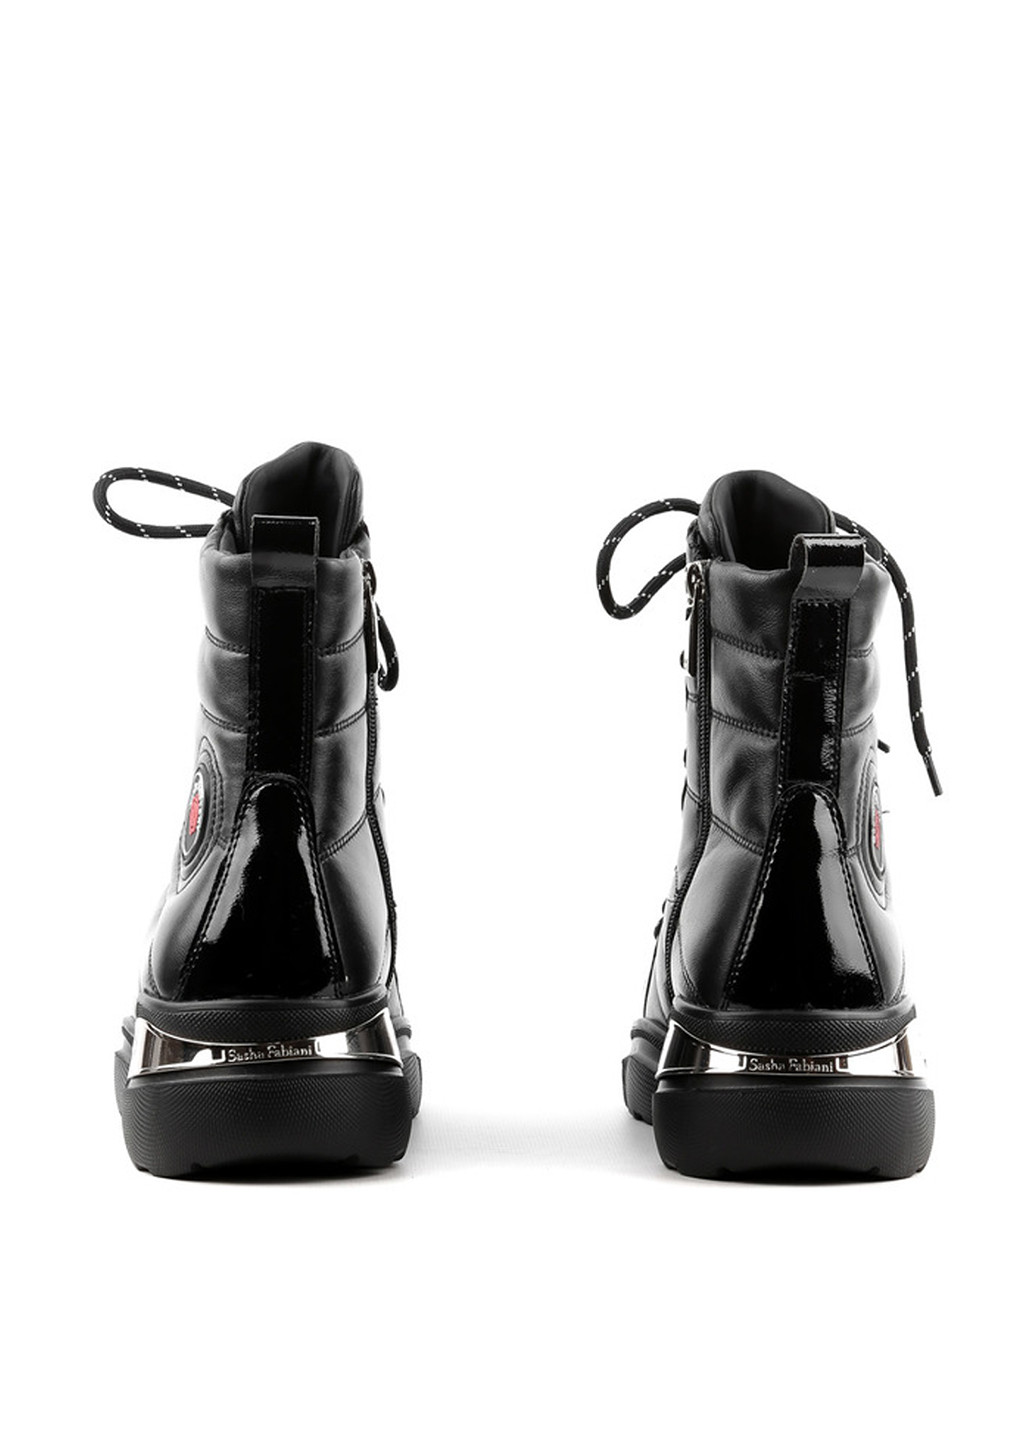 Зимние ботинки Sasha Fabiani со шнуровкой, лаковые